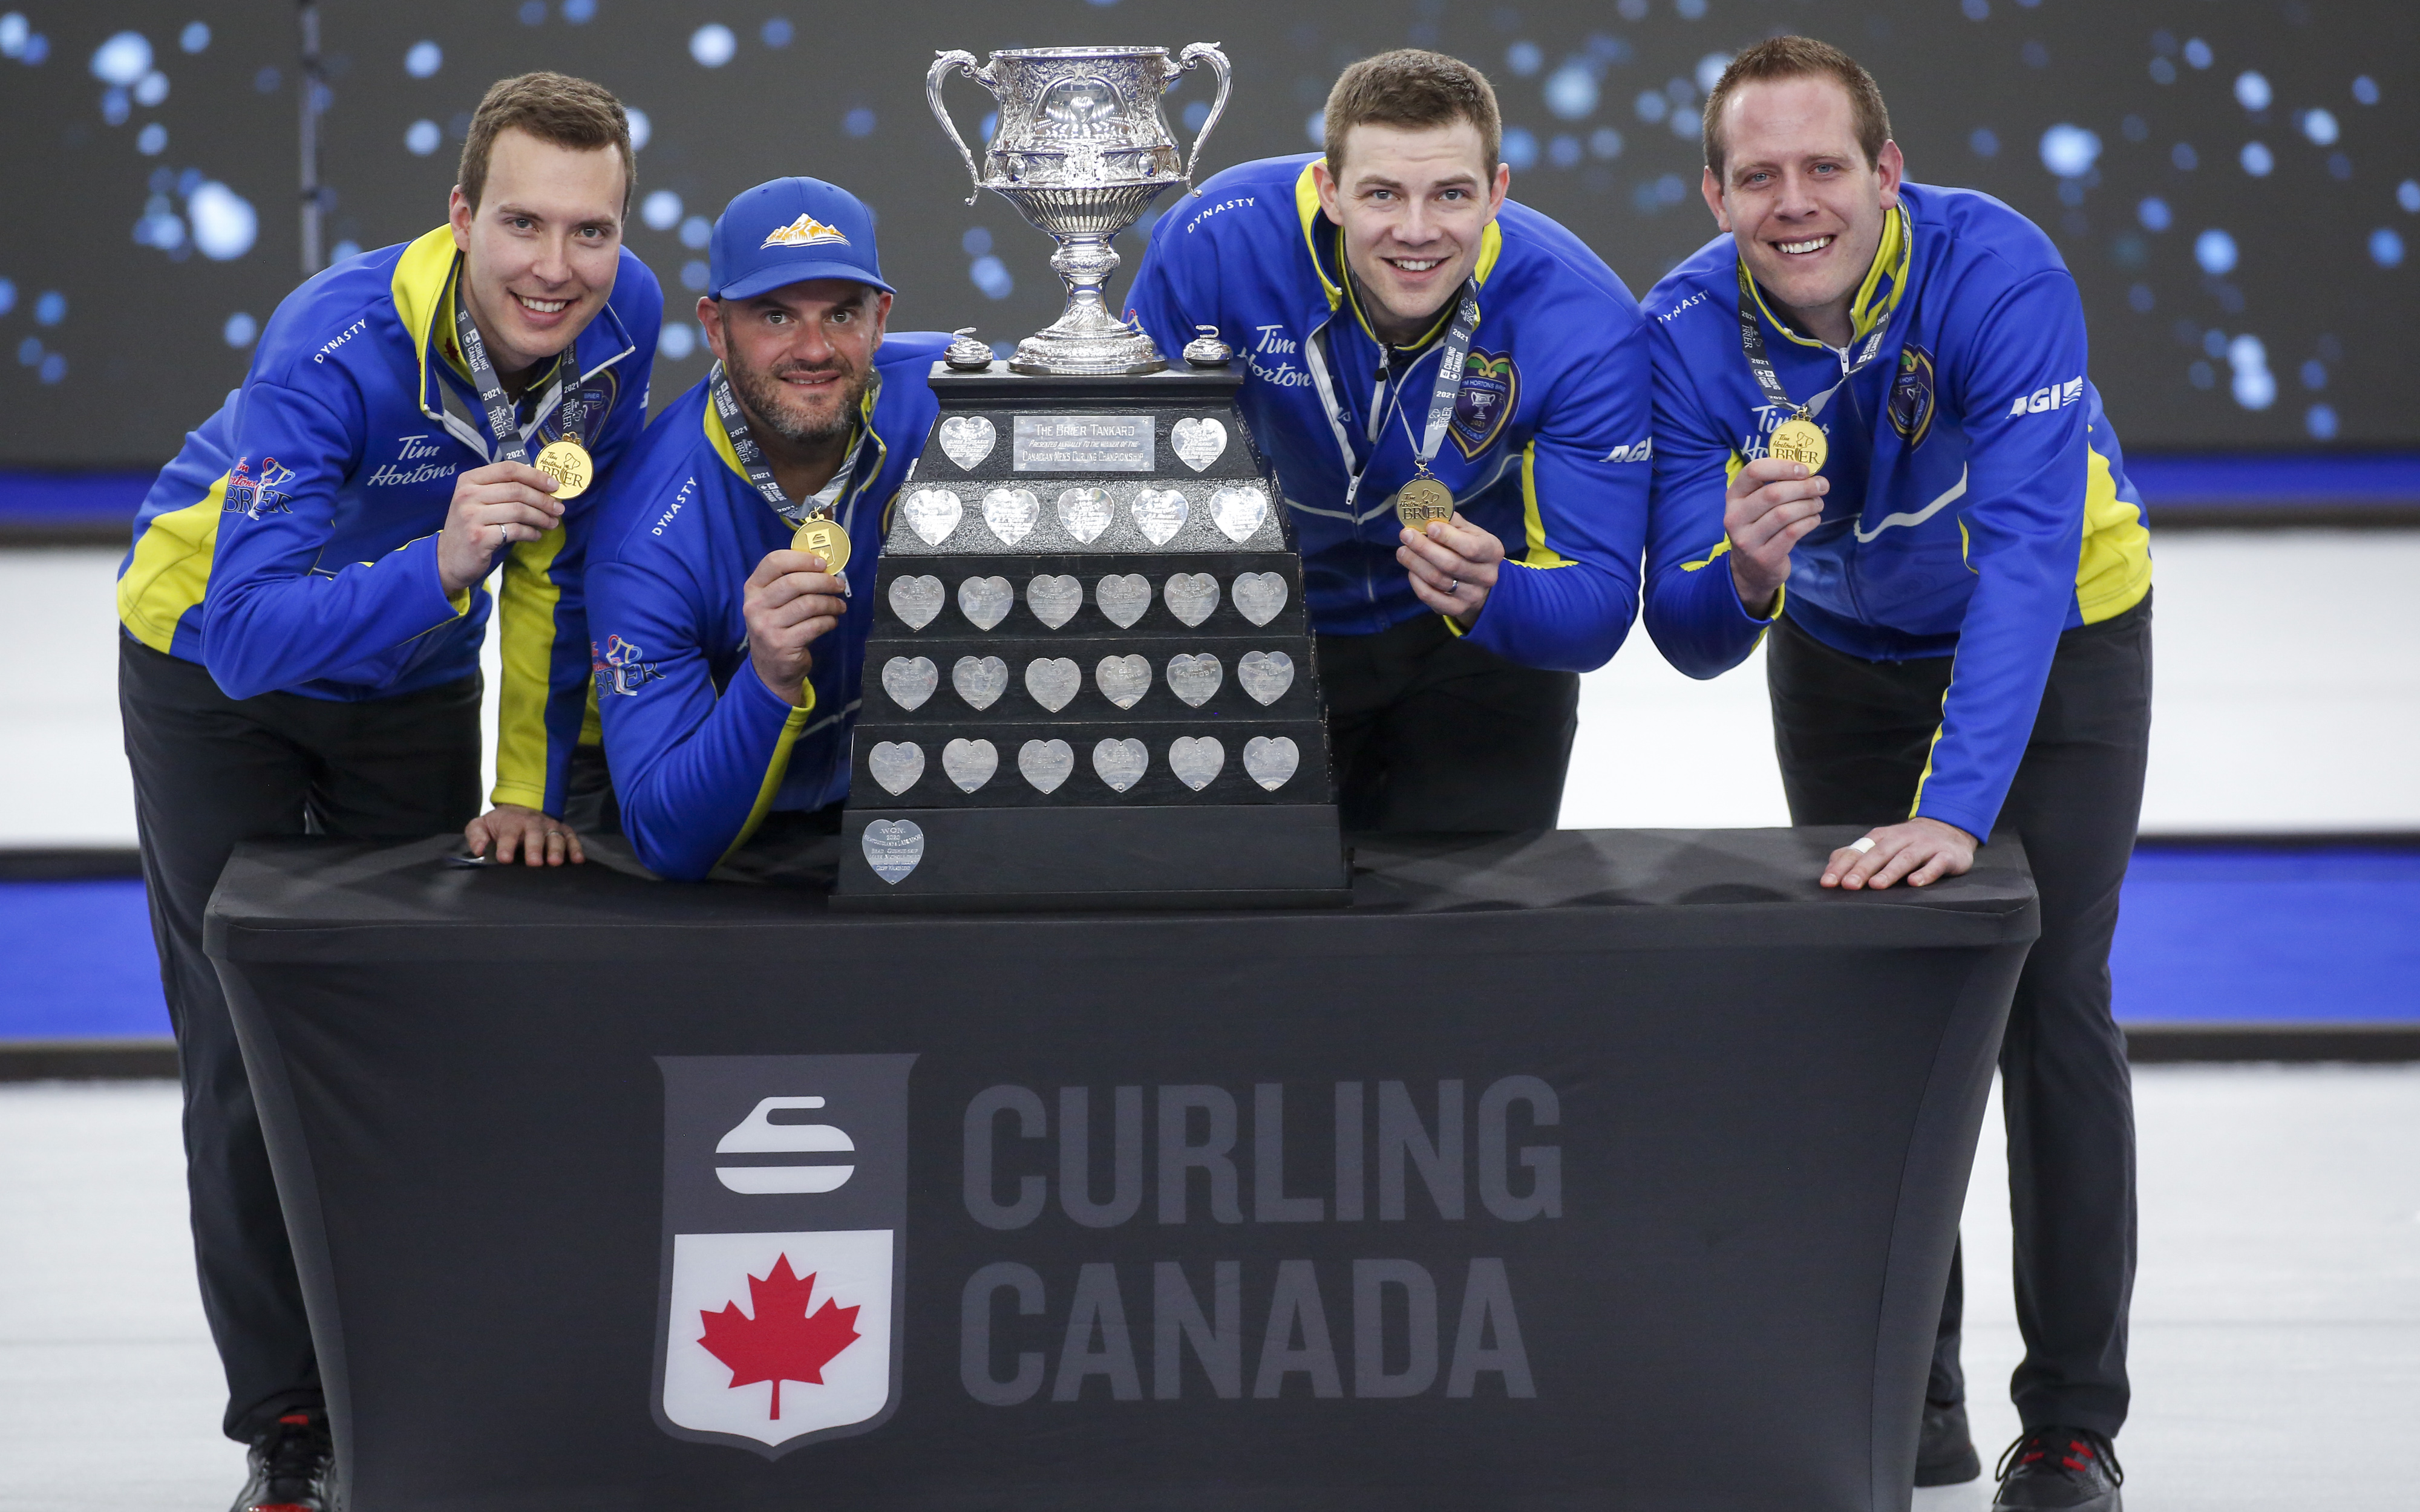 Equipo Alberta, de izquierda a derecha, skip Brendan Bottcher, tercero Darren Moulding, segundo Brad Thiessen, líder Karrick Martin celebrate derrotando al Equipo Wild Card Dos para ganar la final Brier curling en Calgary, Alta. Domingo, 14 de marzo de 2021.